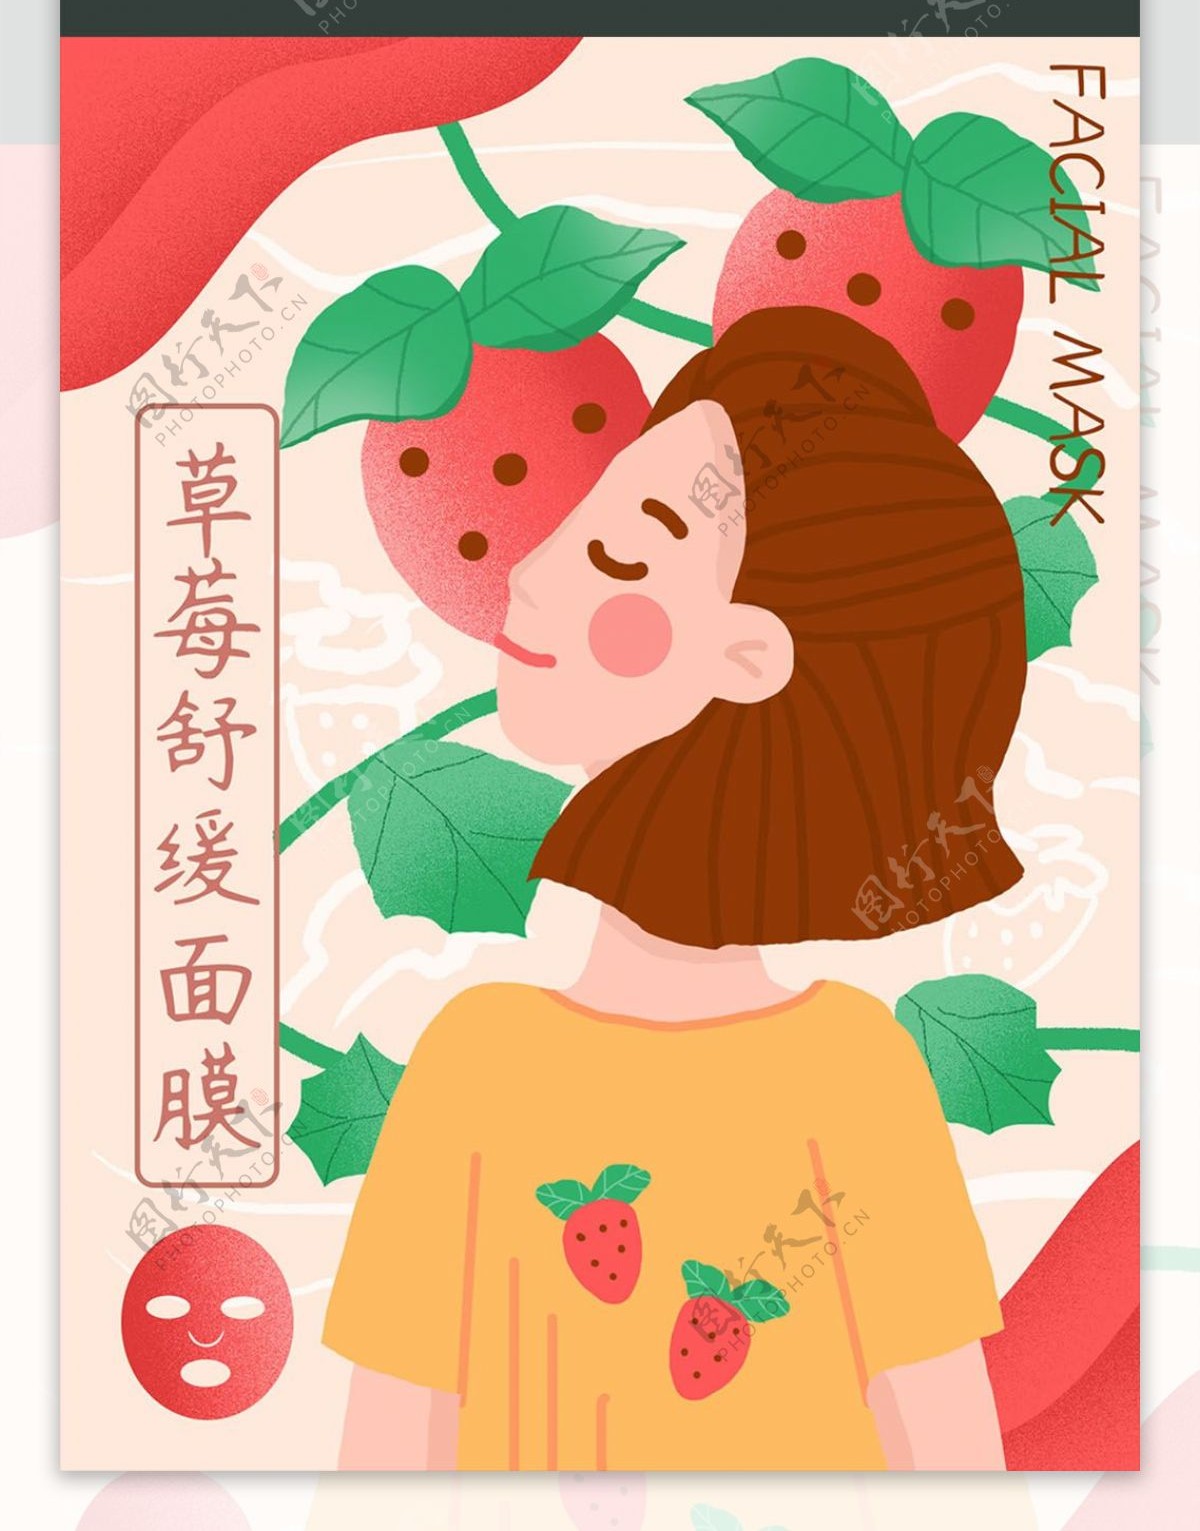 粉色小清新草莓舒缓面膜手绘女孩插画包装